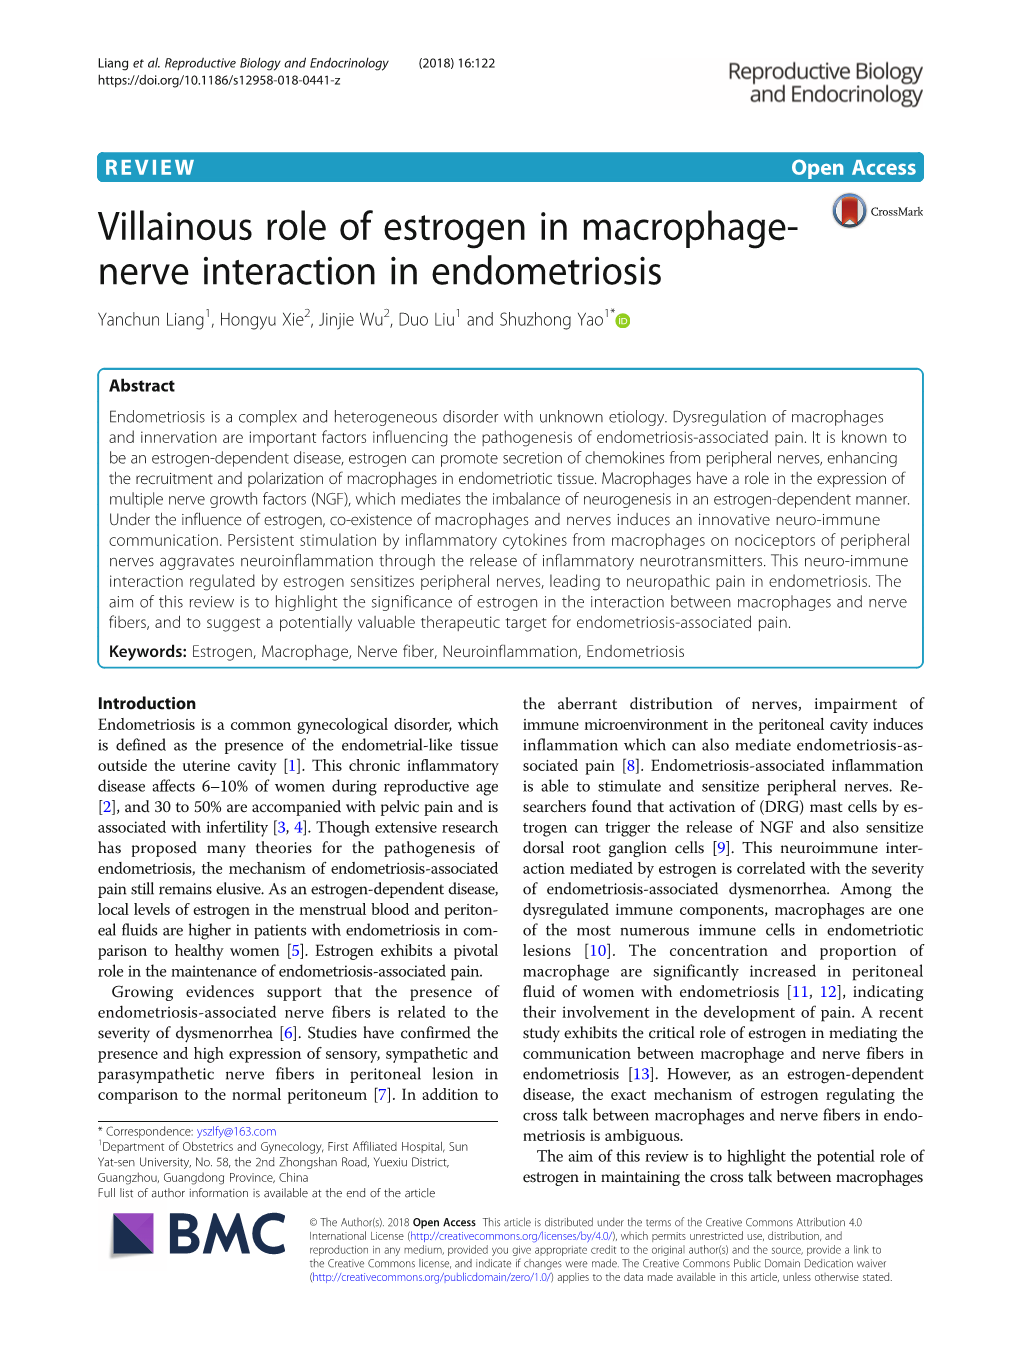 Villainous Role of Estrogen in Macrophage-Nerve Interaction In